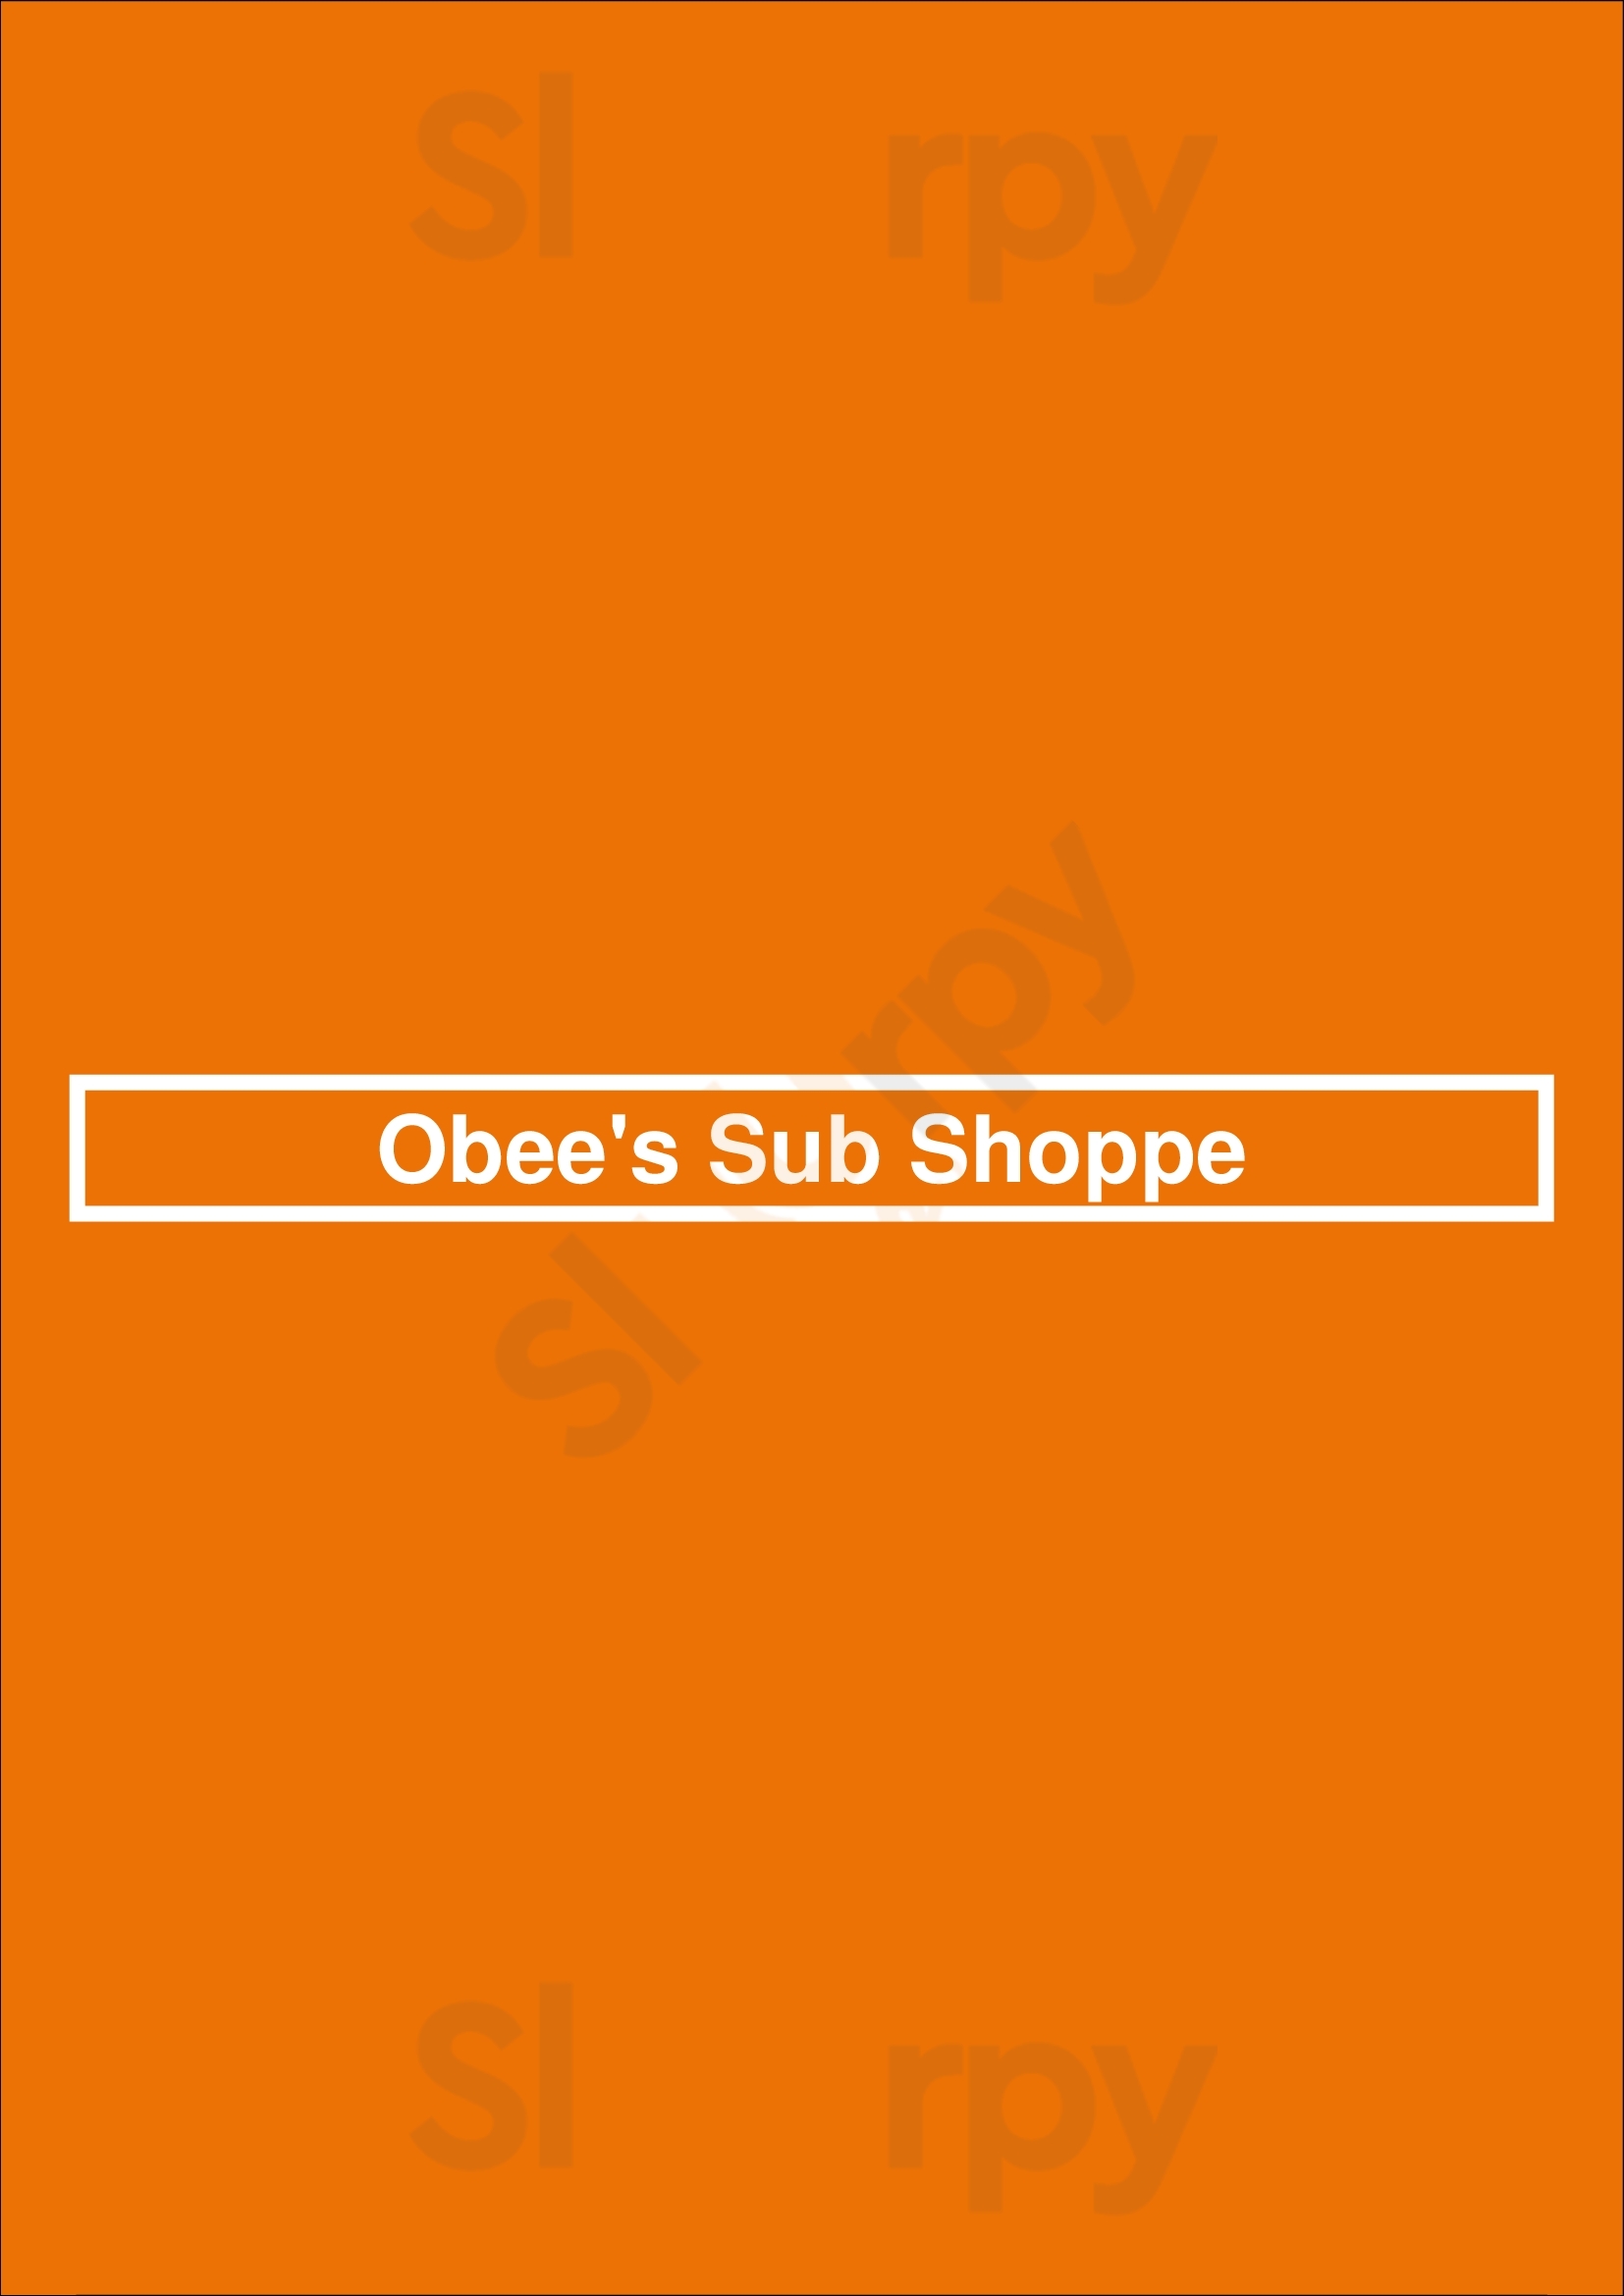 Obee's Sub Shoppe LaSalle Menu - 1